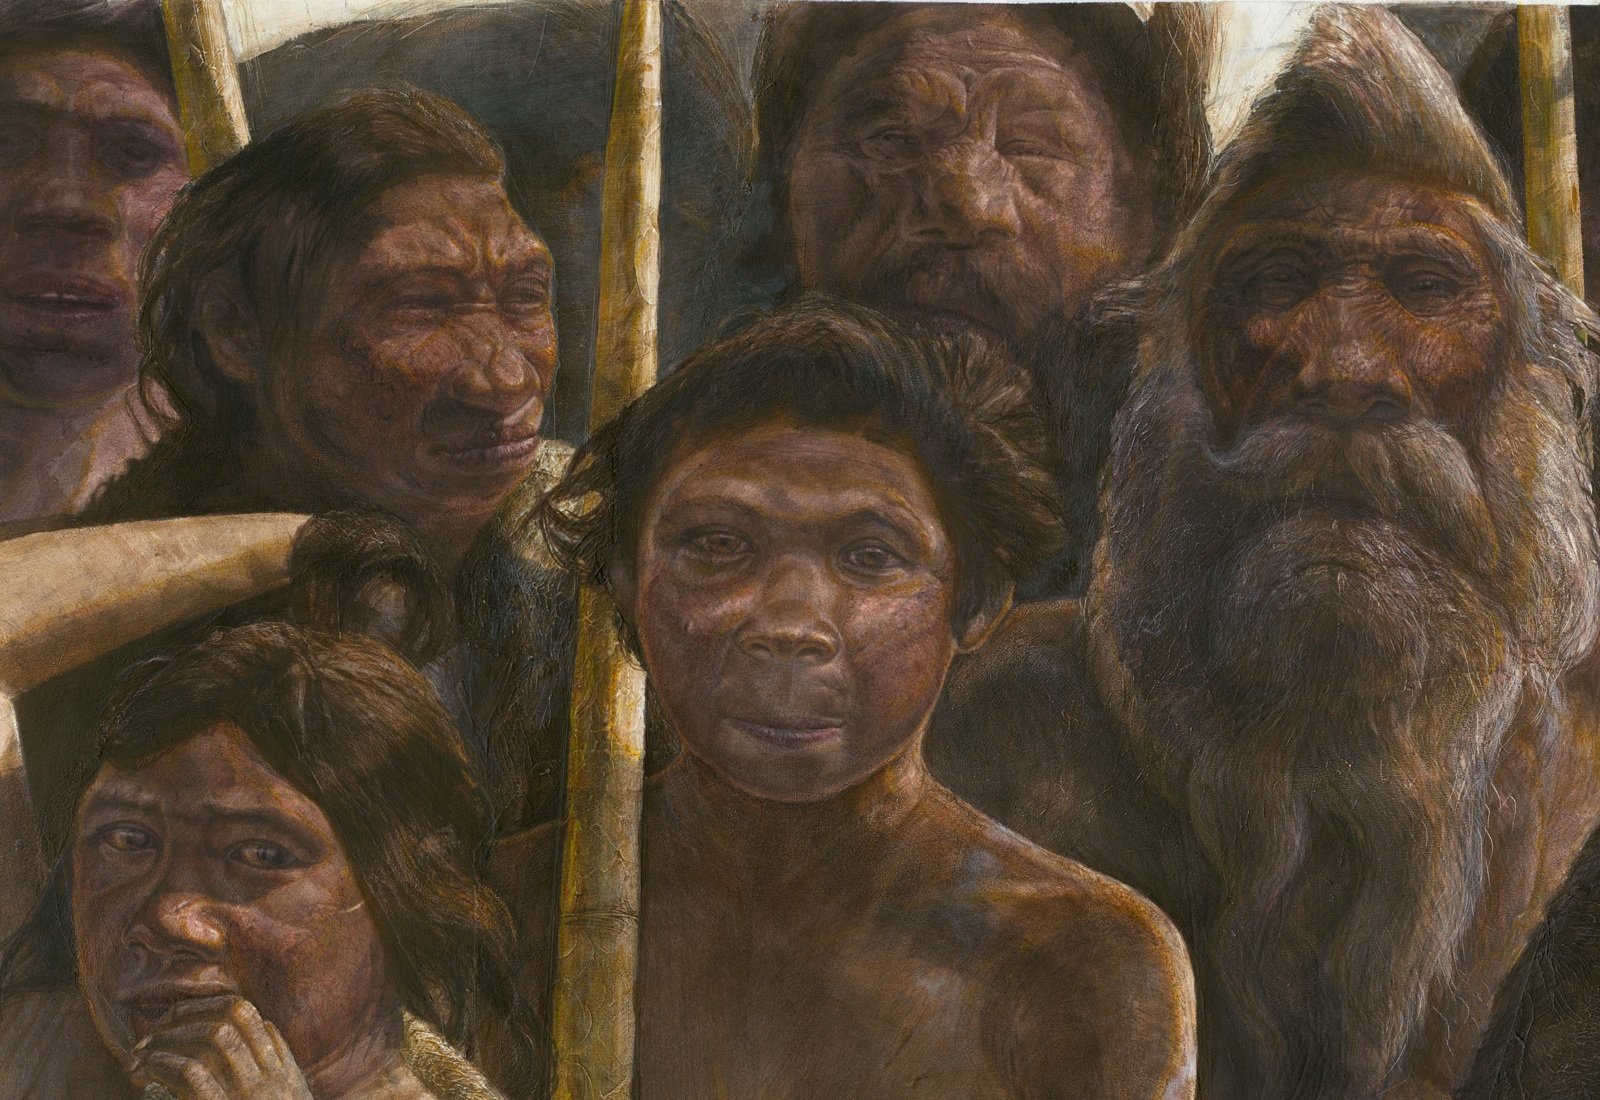 Die Homininen aus Sima de los Huesos lebten vor ungefähr 400.000 Jahren während des Mittleren Pleistozäns.